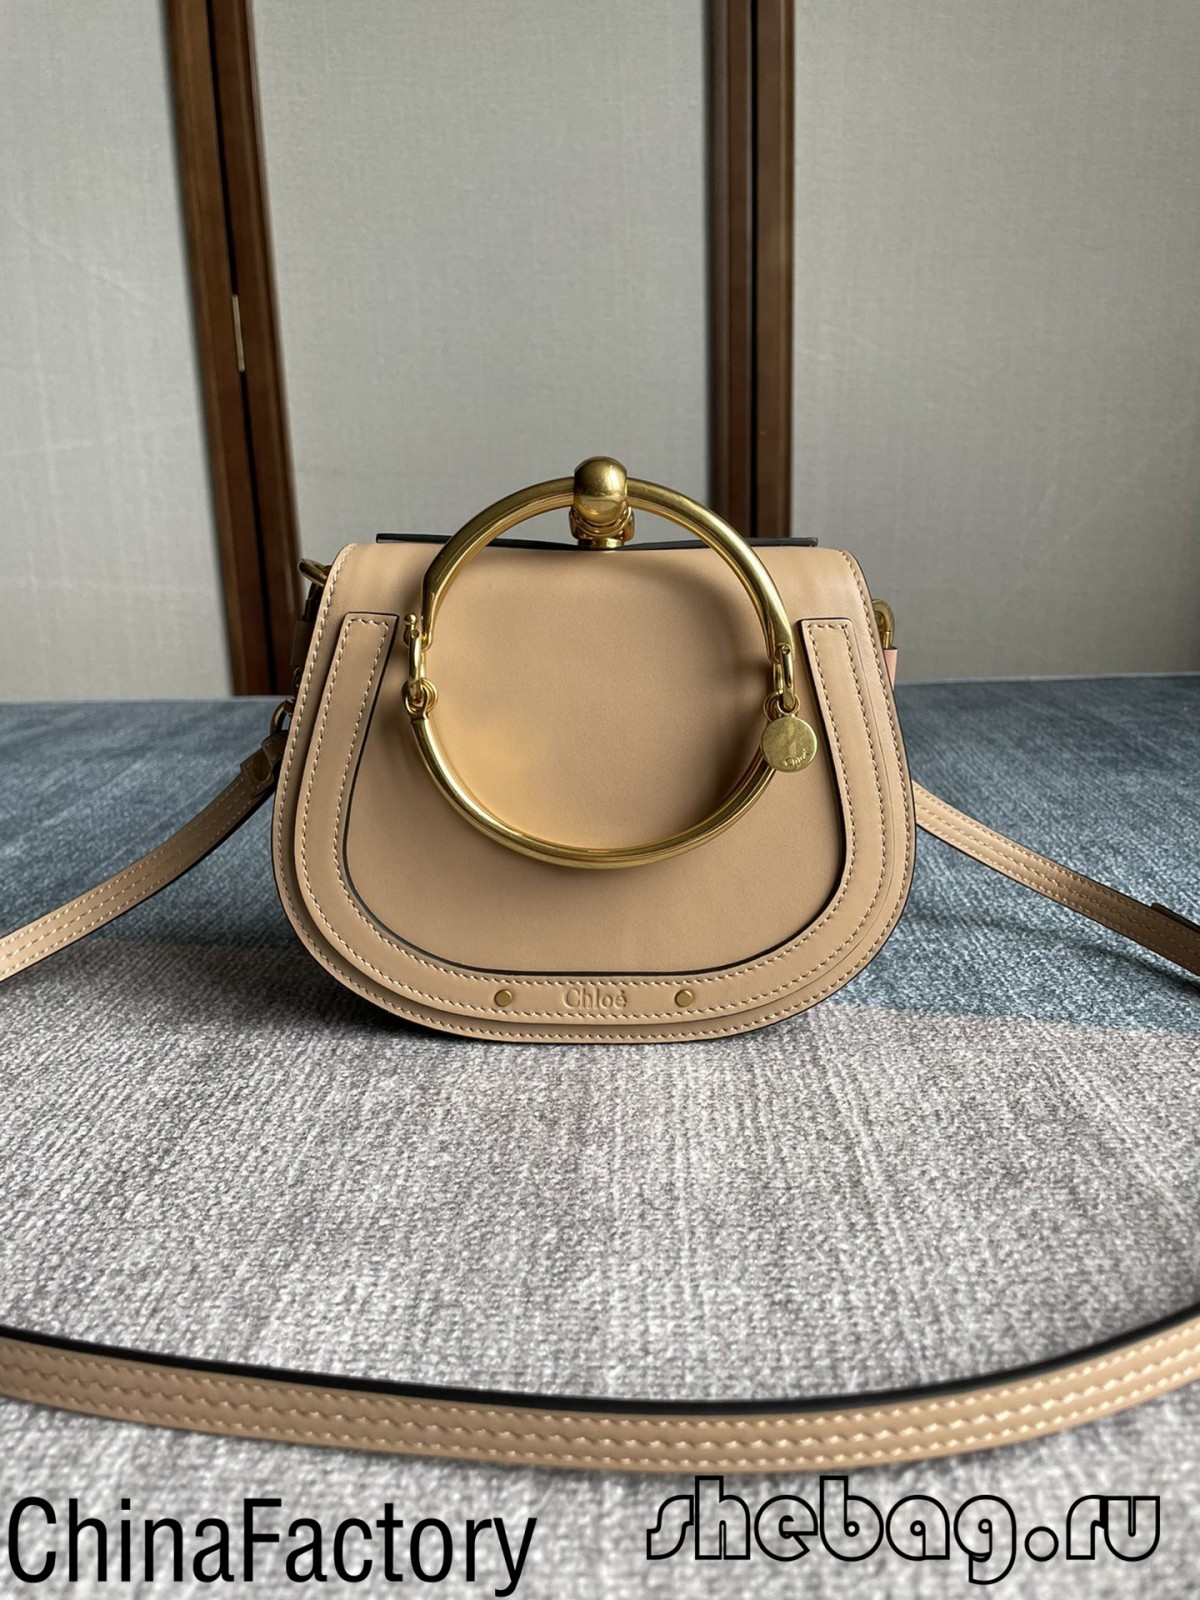 Fábrica de réplicas de saco do nilo de melhor qualidade na China (2022 mais quente)-Loja online de bolsa Louis Vuitton falsa de melhor qualidade, bolsa de designer de réplica ru